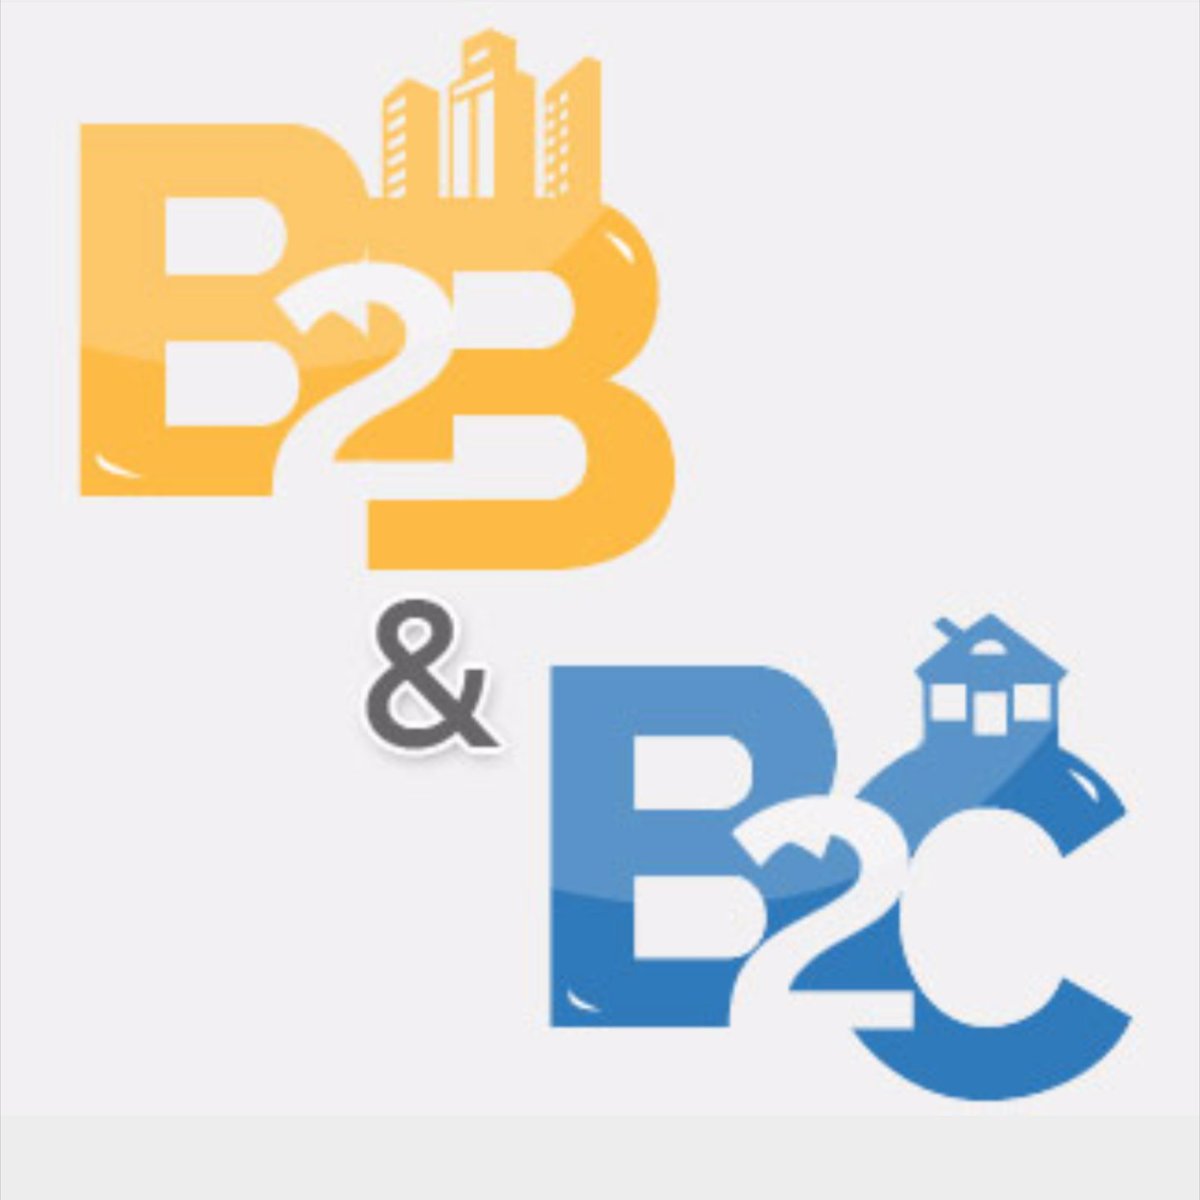 2B c: Типы соединителей B, 2B, C, 2C, M, Q, 2Q, R, R(HE11) , 2R - ток до 2A